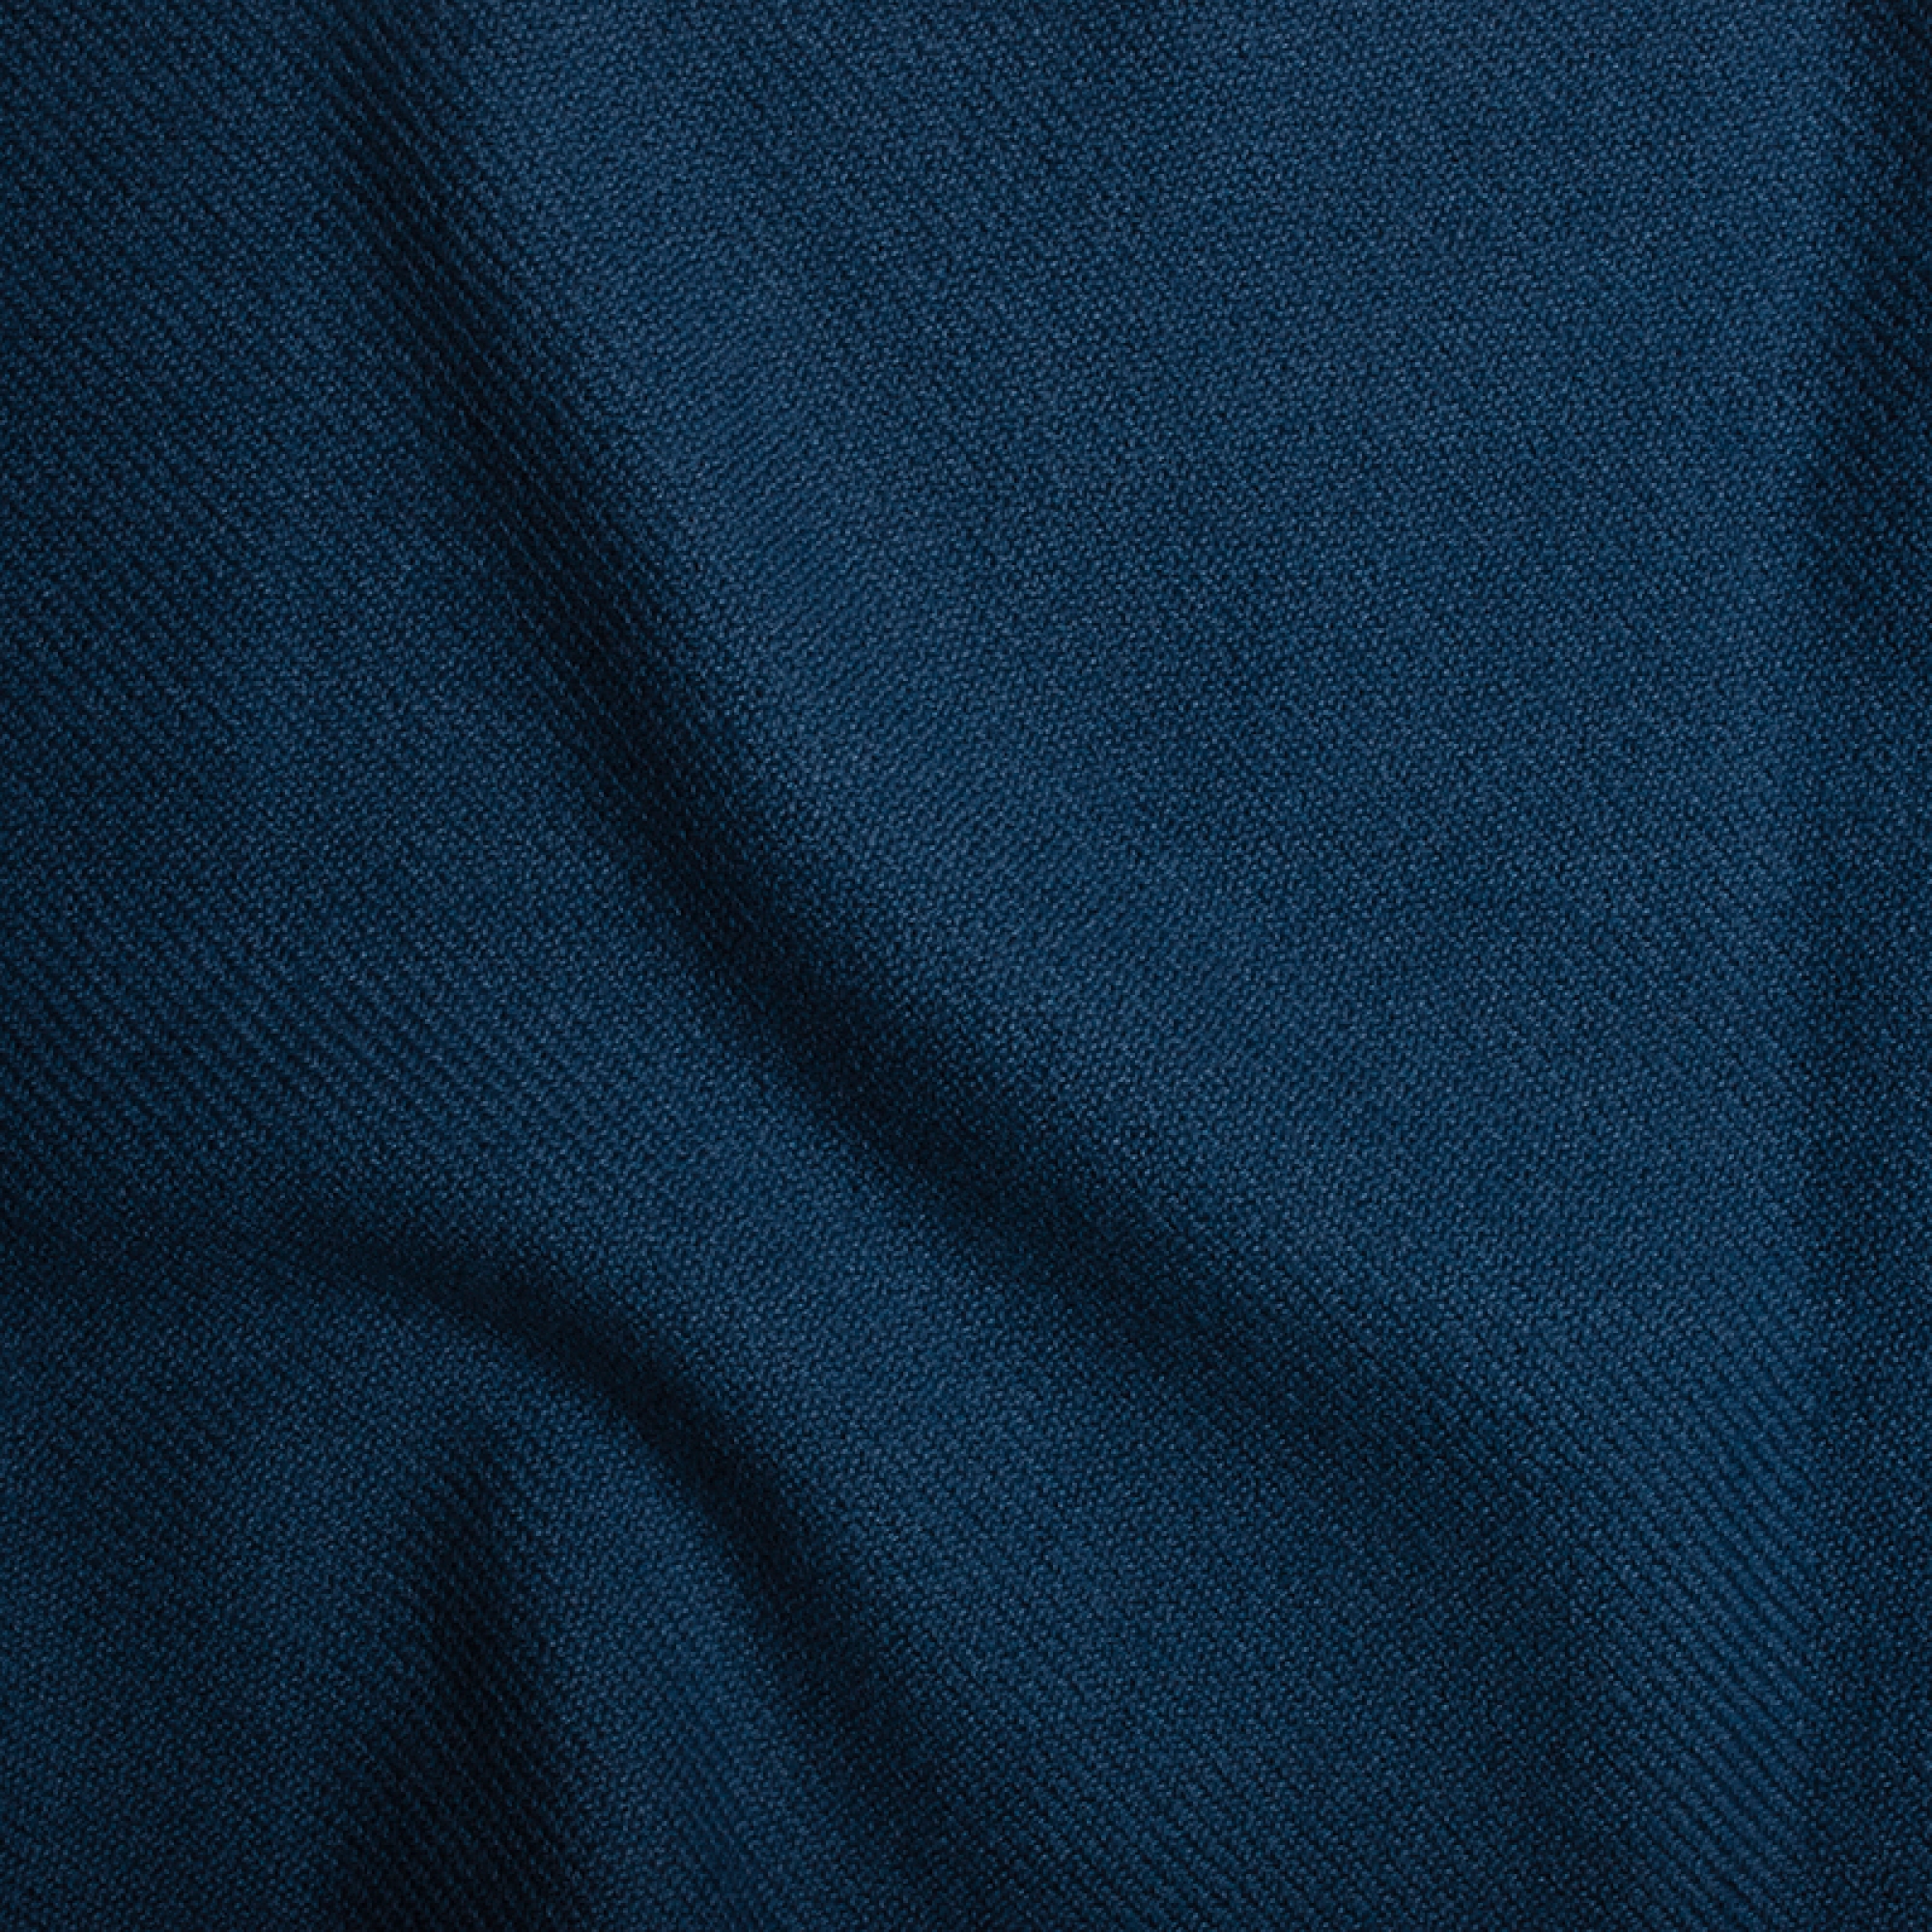 Cachemire accessoires homewear toodoo plain xl 240 x 260 bleu prusse 240 x 260 cm